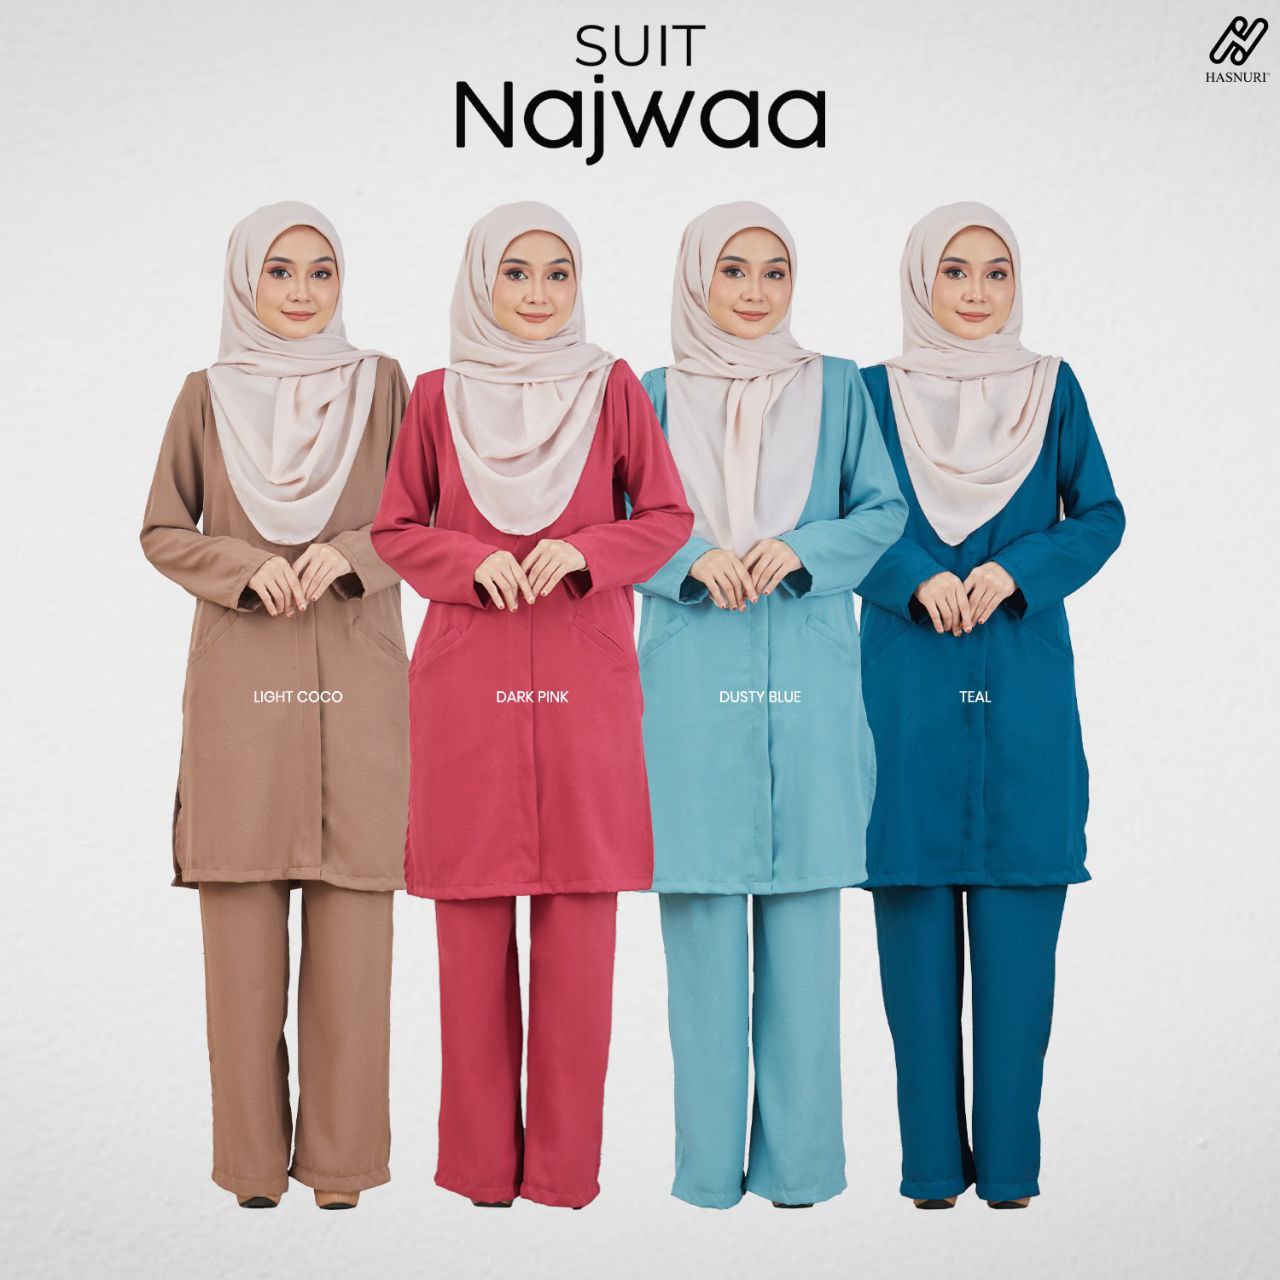 Suit Najwaa - Dusty Blue